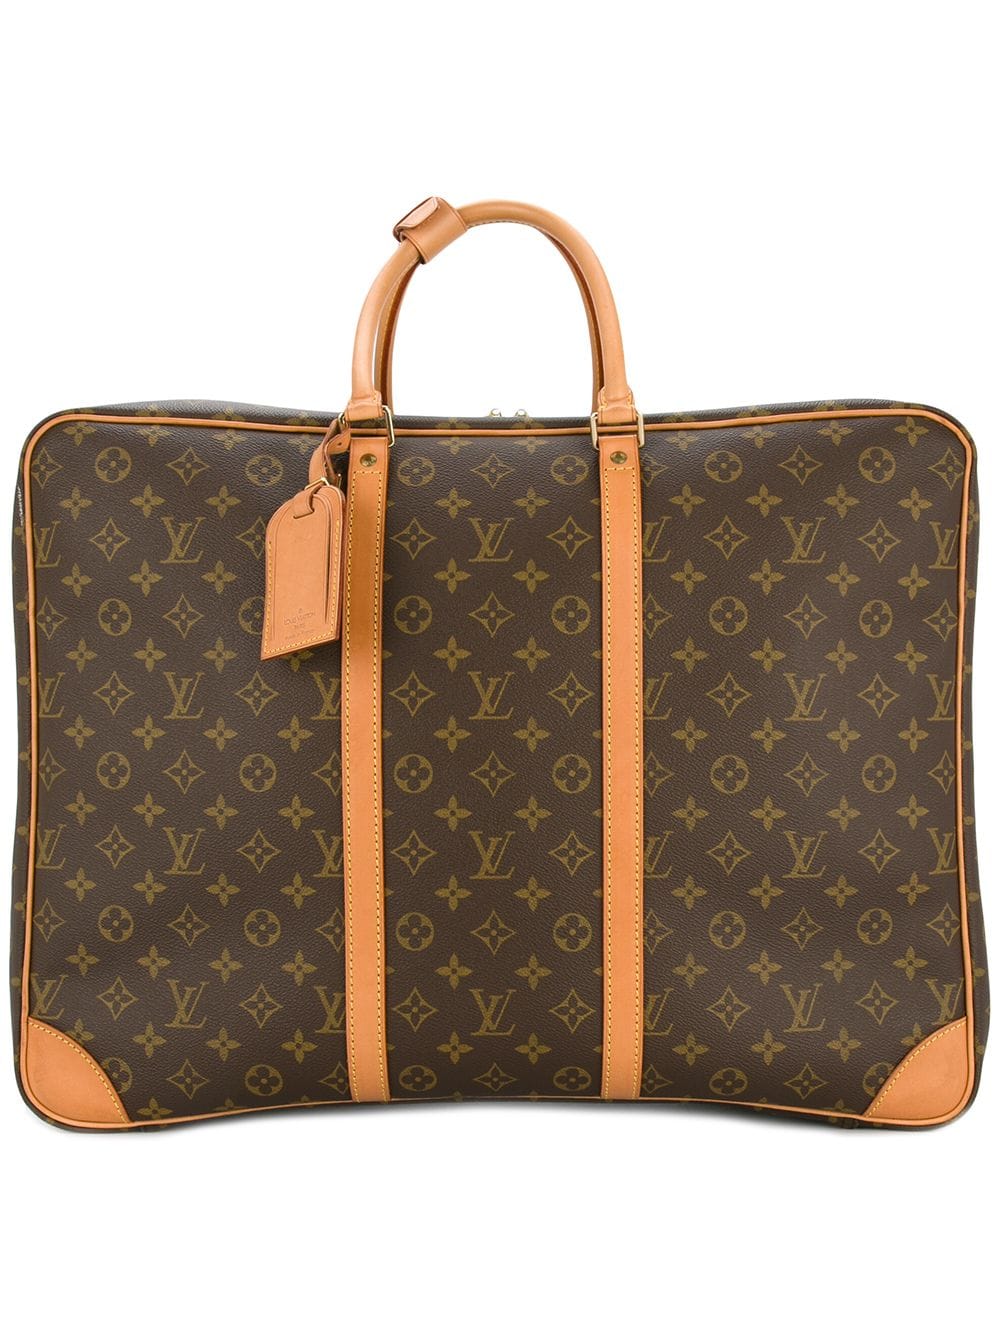 Sirius cloth travel bag Louis Vuitton Beige in Cloth - 32559592